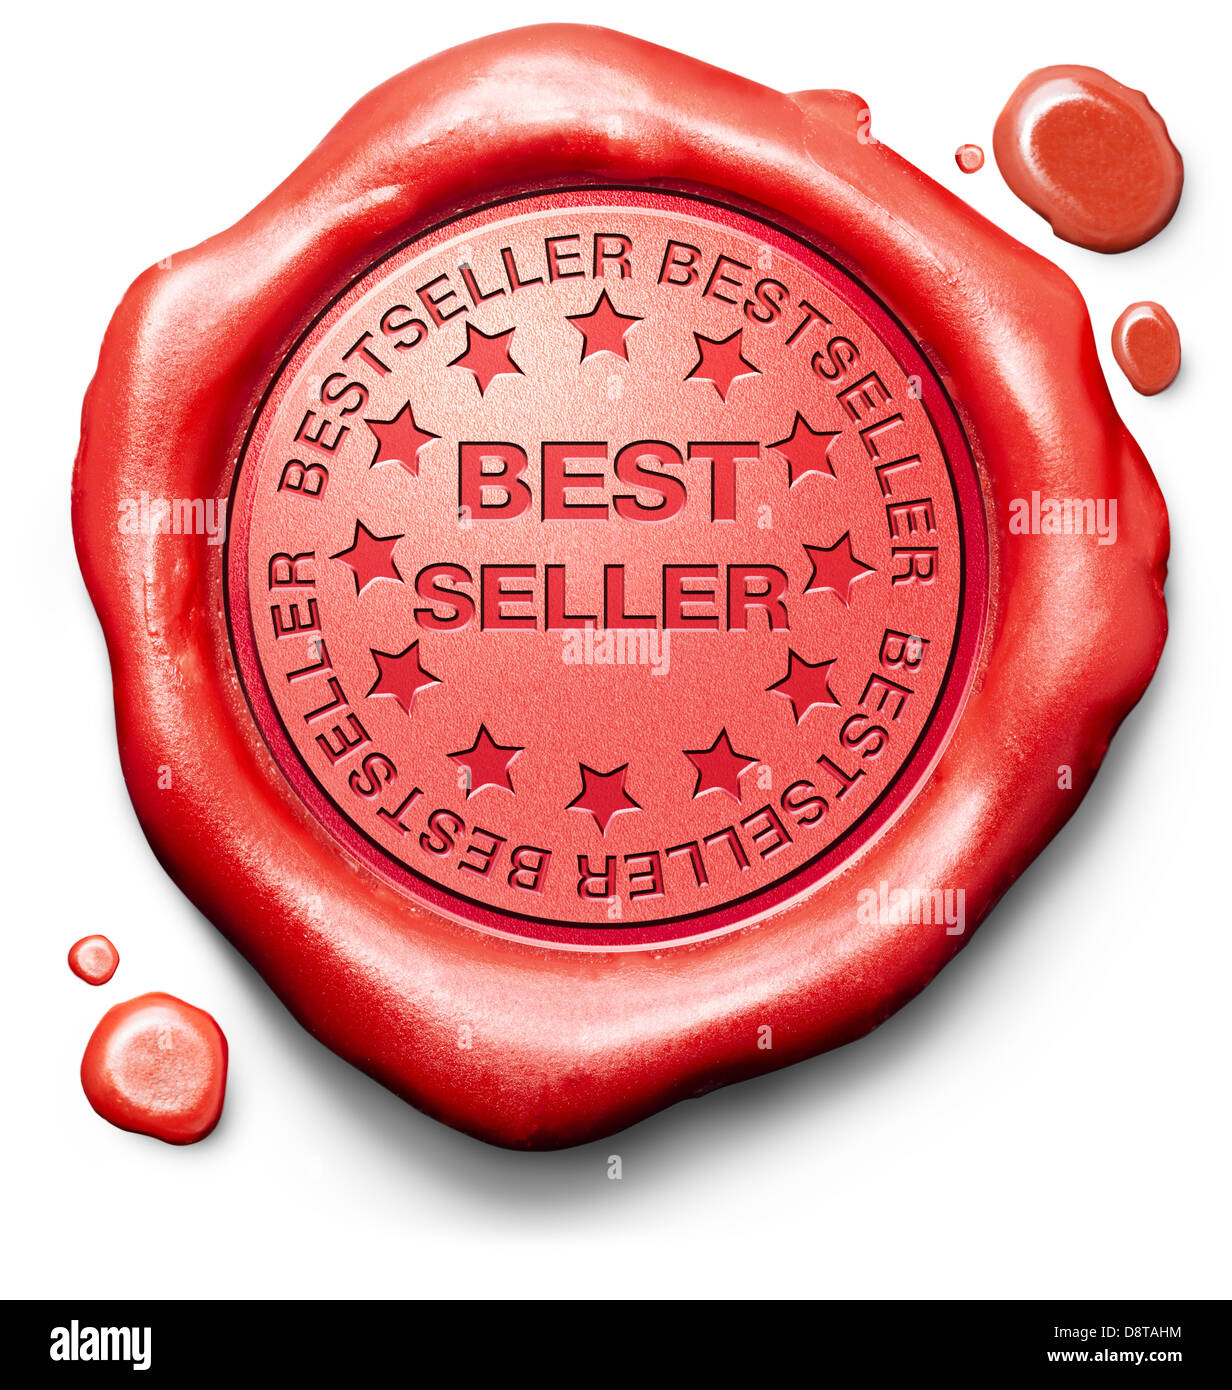 besten Verkäufer bester Verkäufer Produkt höchste Qualität und die meisten wollten Element rotem Wachs Siegel-Stempel-Symbol Stockfoto